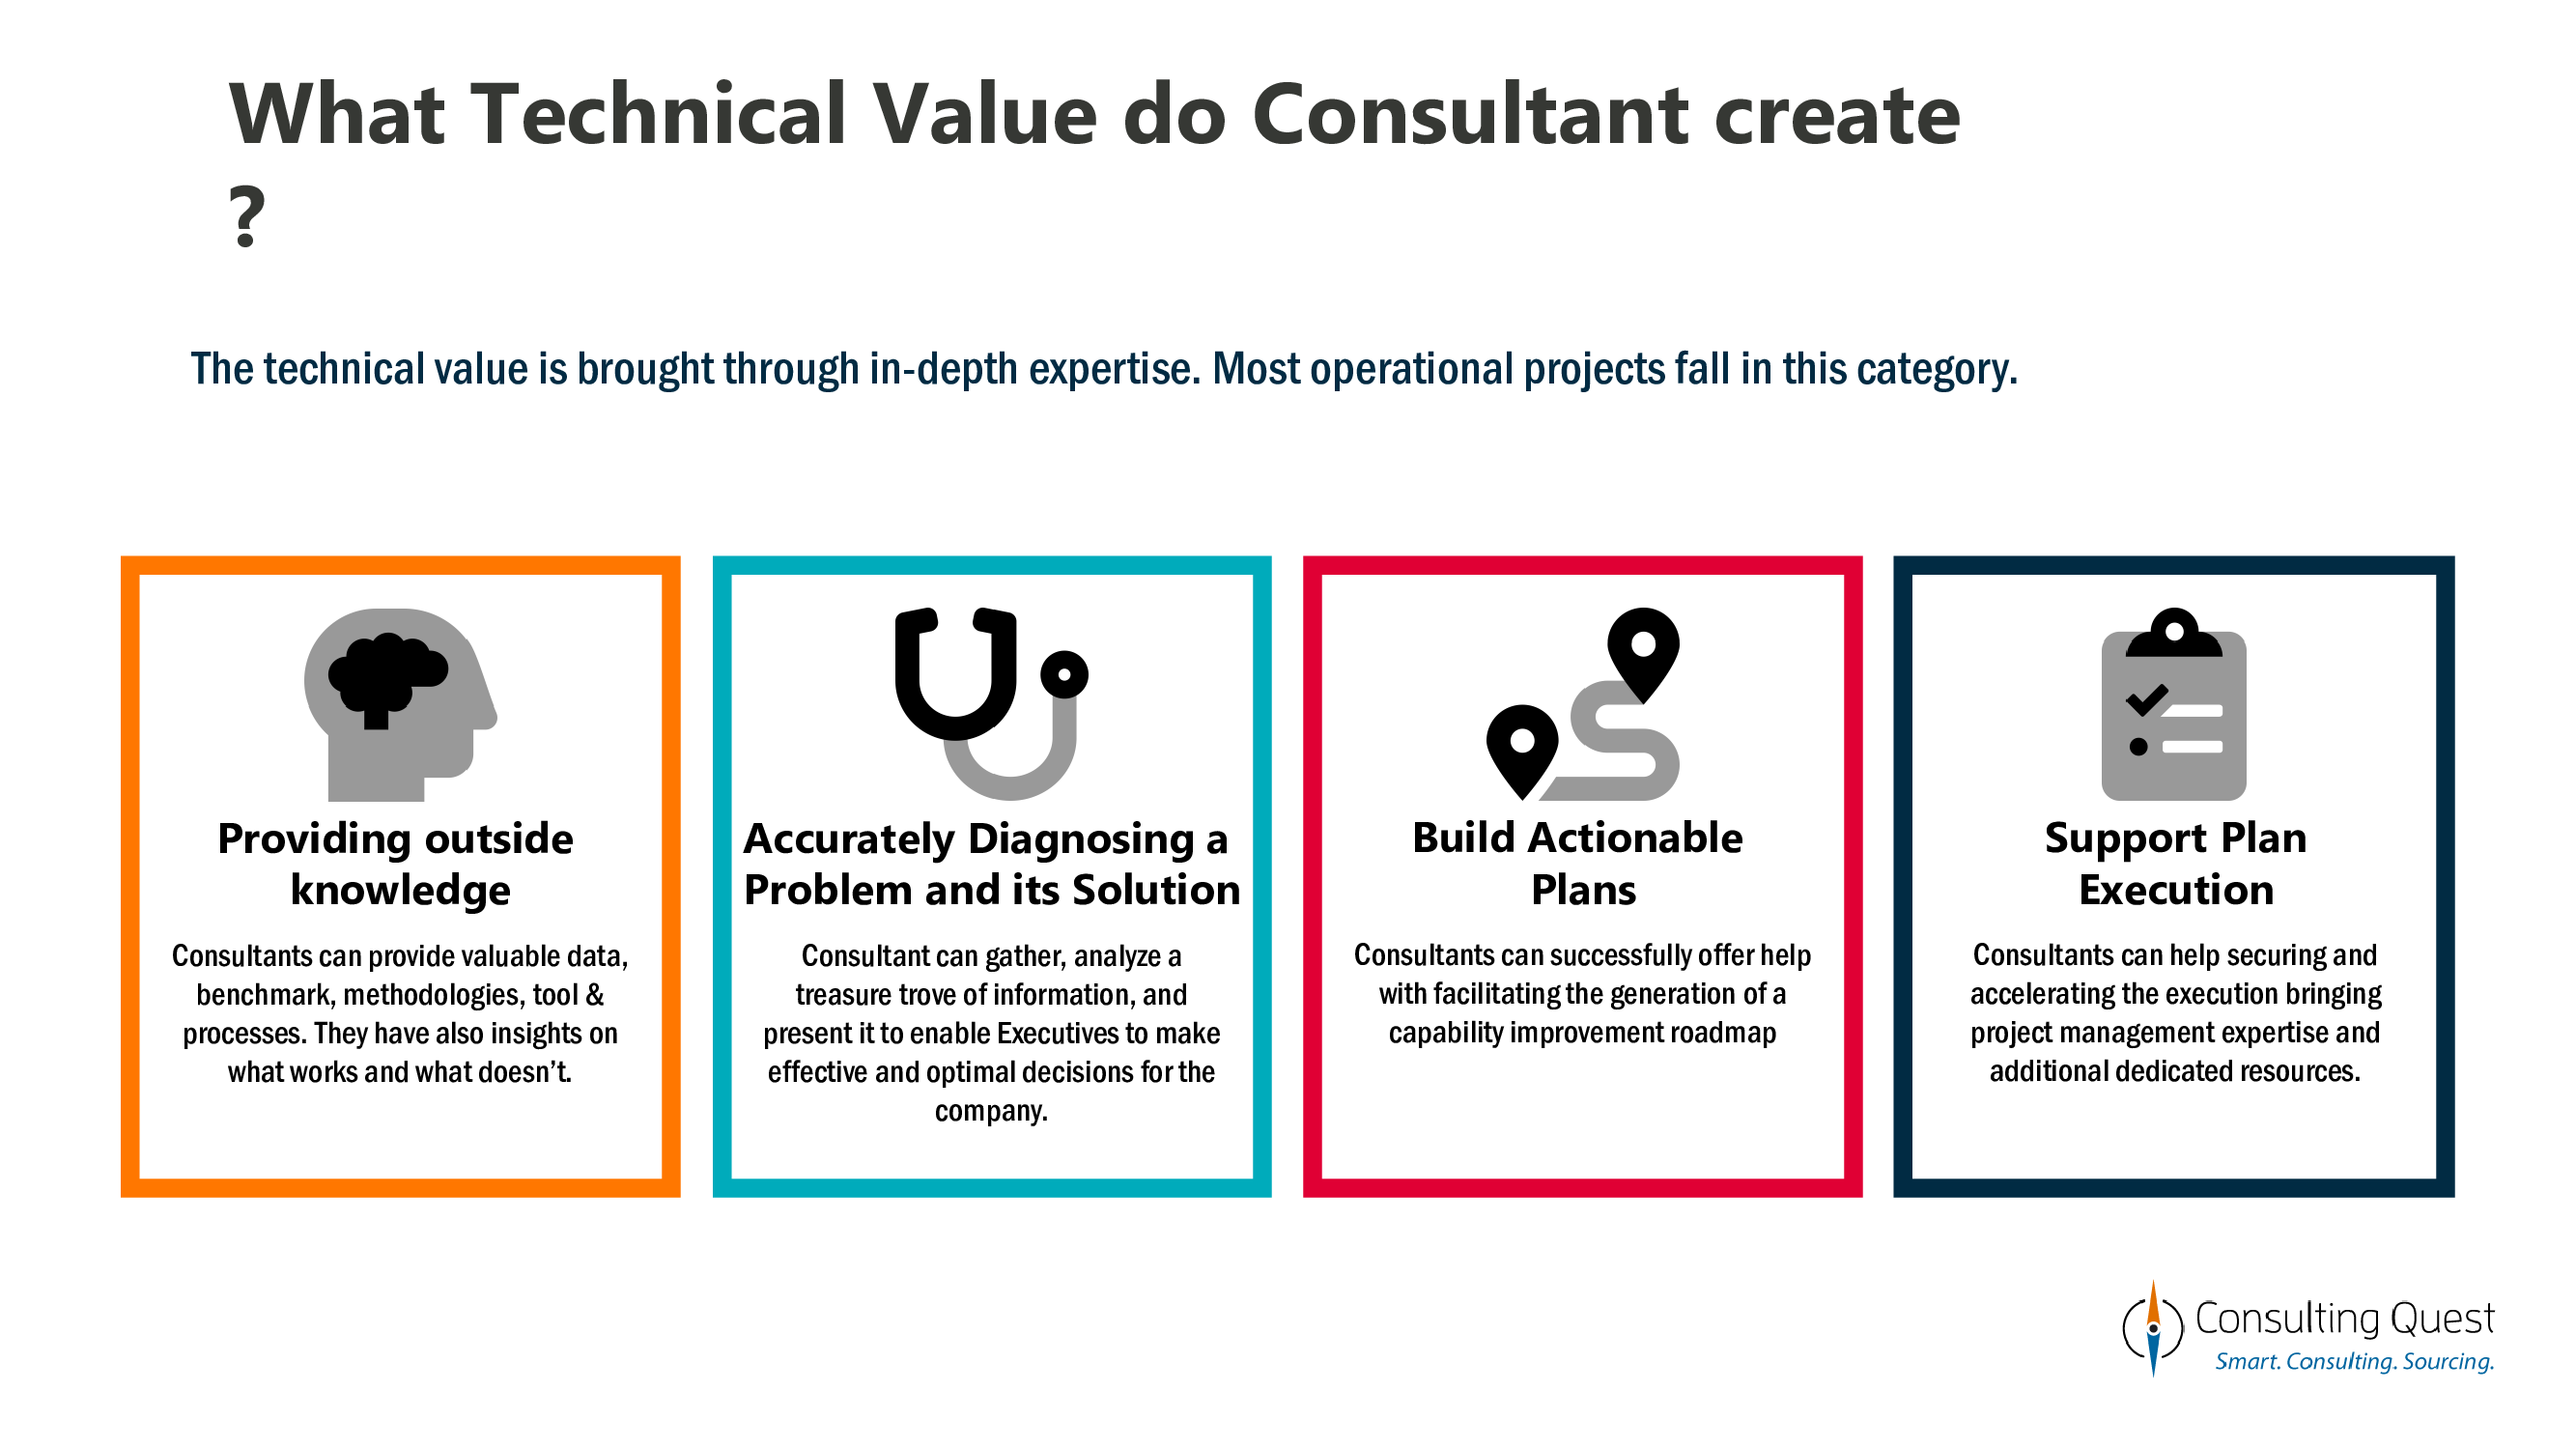 Valor técnico criado pelos consultores